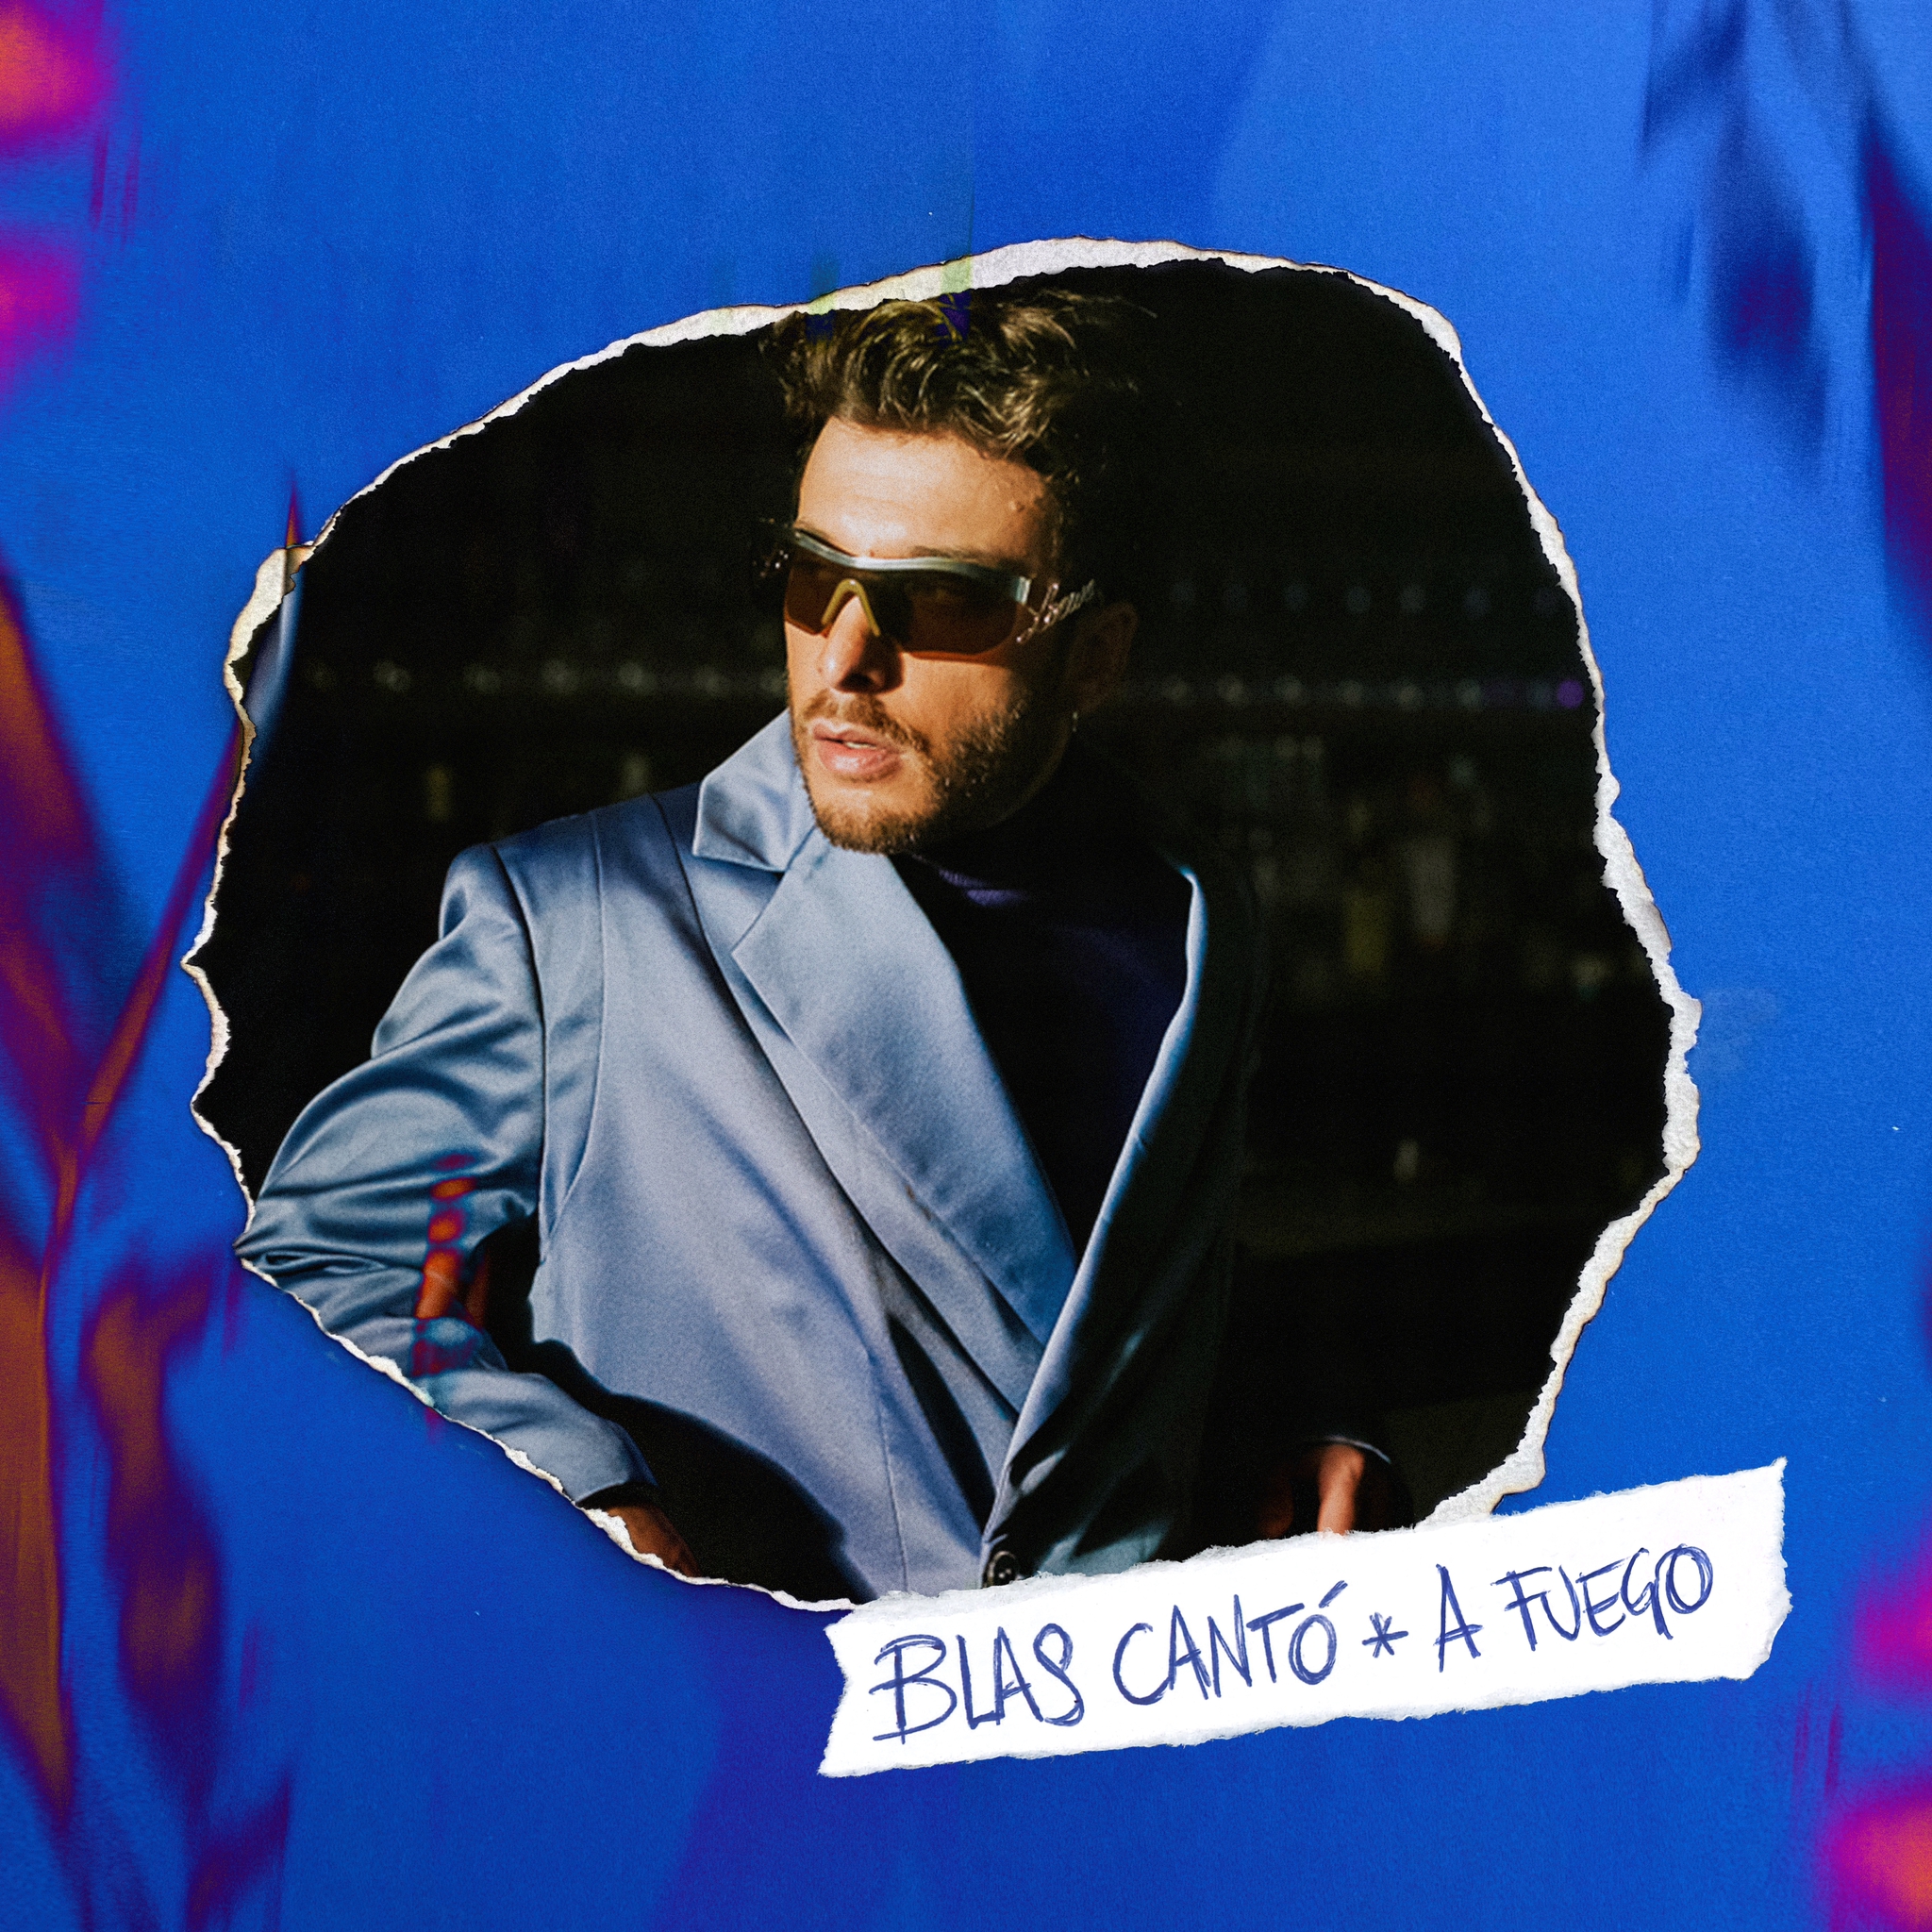 Nuevo Single de Blas Cantó - A Fuego